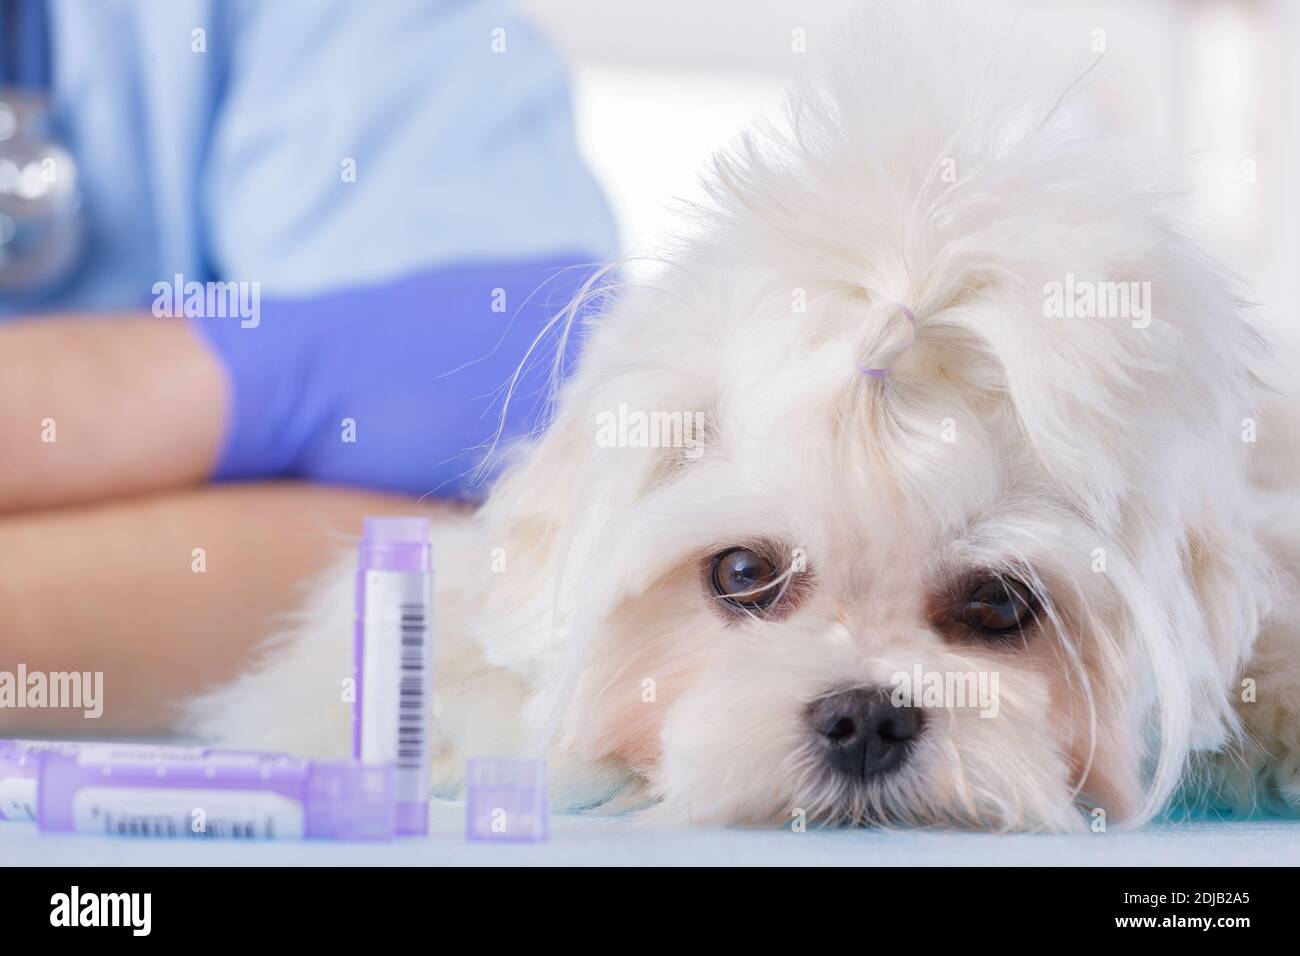 El pequeño perro maltés se encuentra en la oficina del veterinario al lado botellas de medicamentos homeopáticos Foto de stock